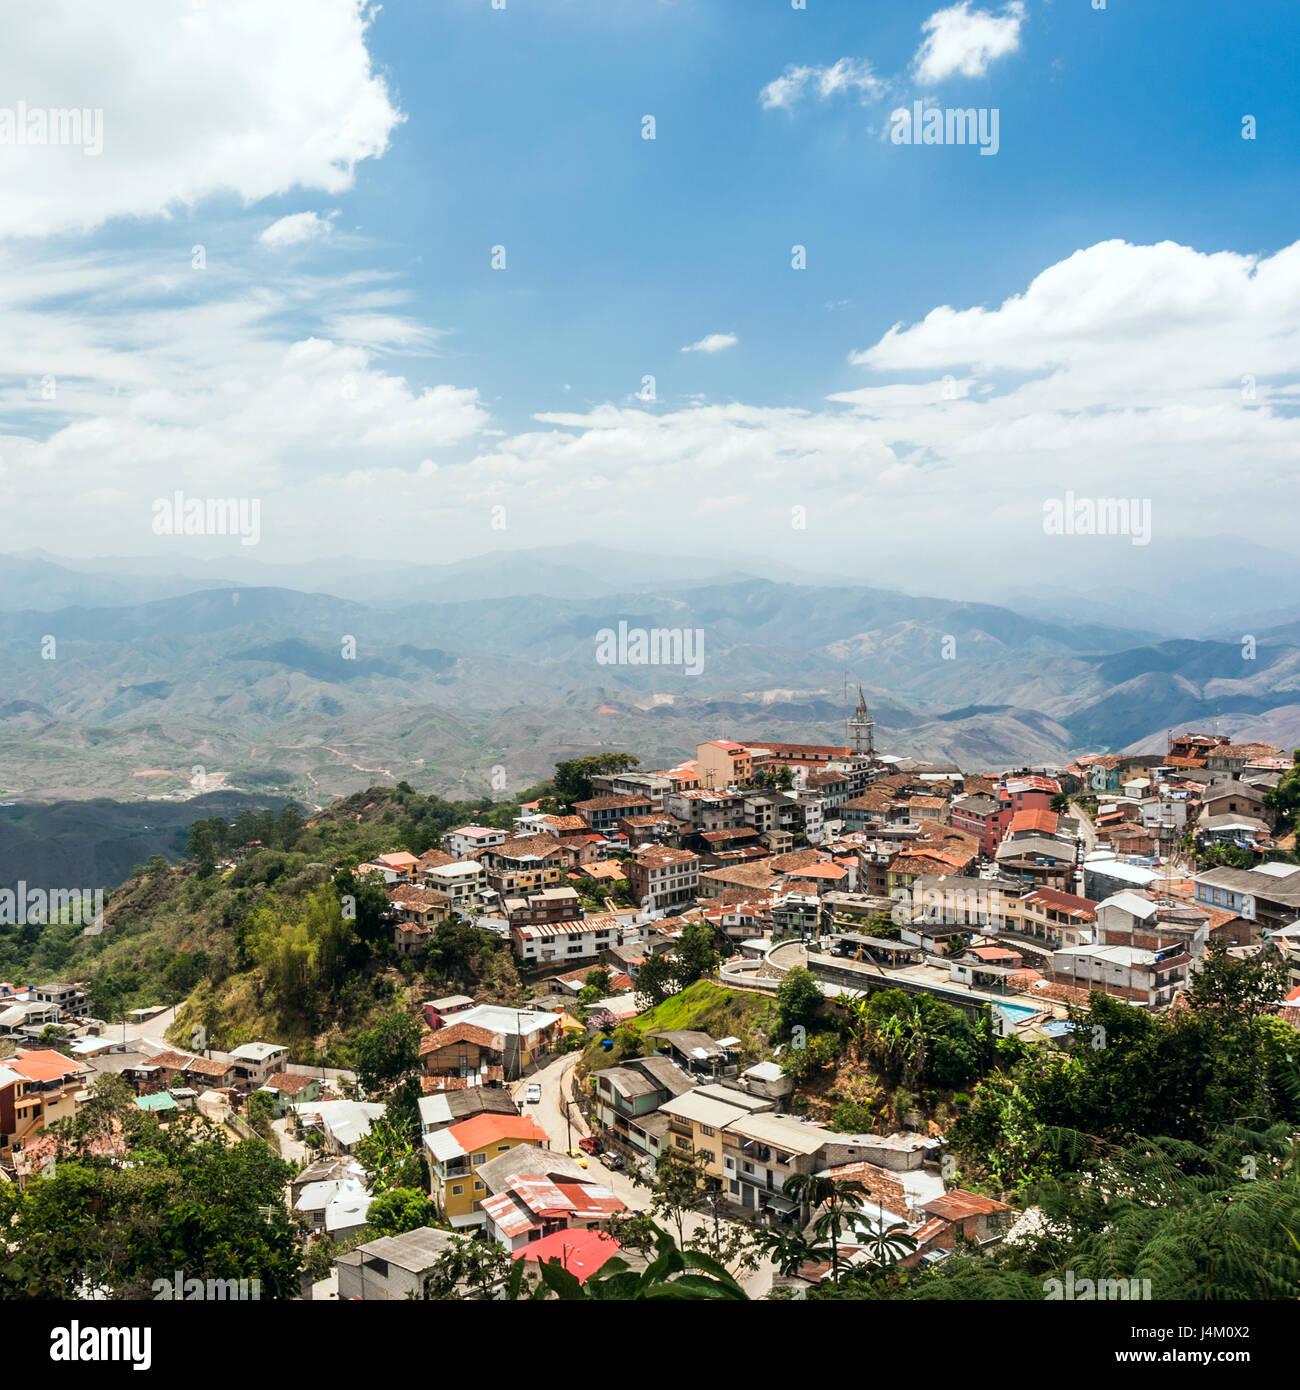 Zaruma - pueblo de mineros de oro, Ecuador. Situado en el sur de la provincia de El Oro (que significa literalmente "el oro") en el occidente de los Andes mou Foto de stock